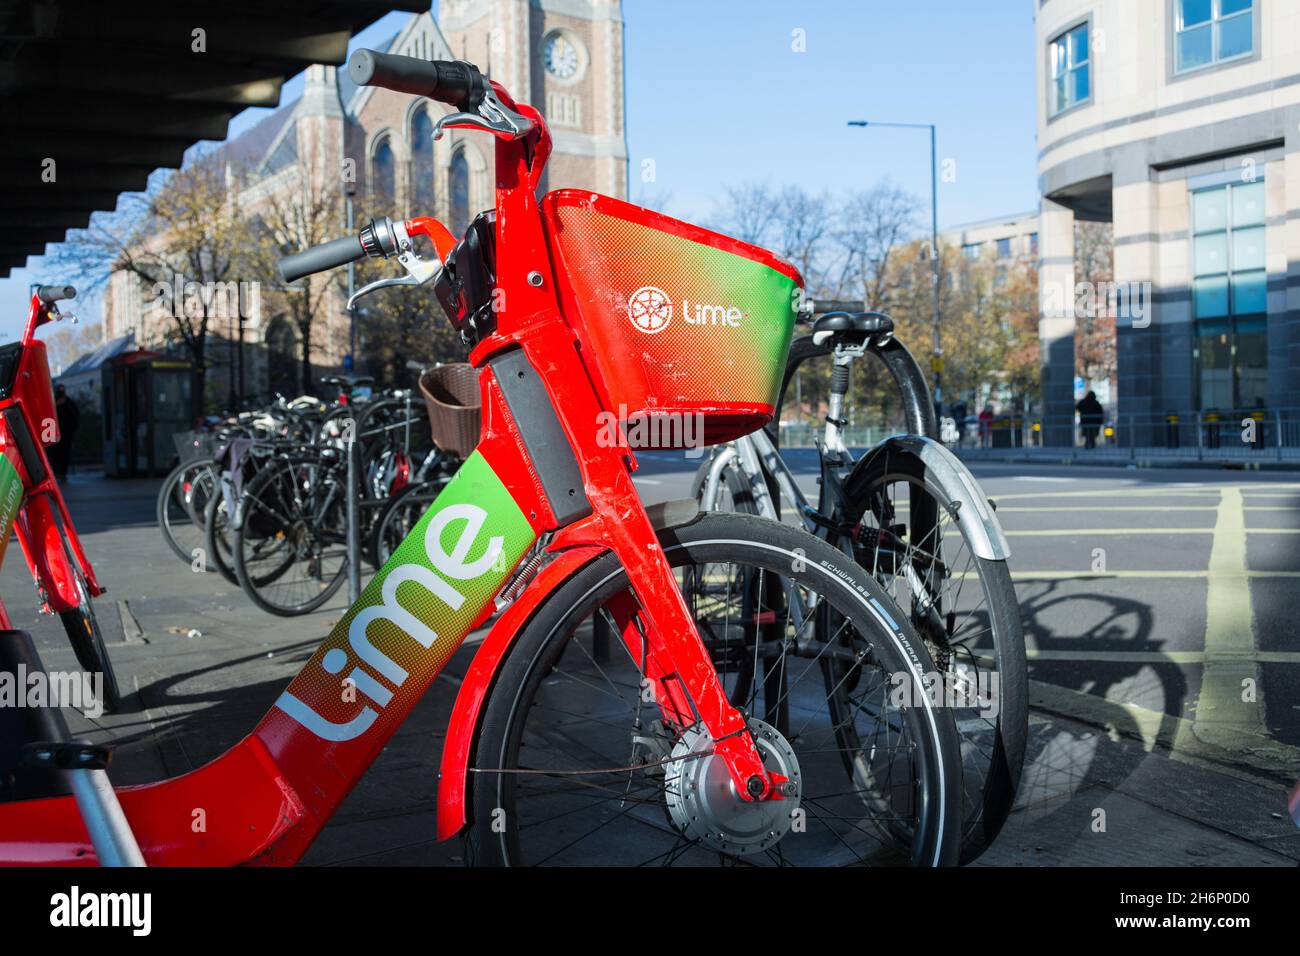 A Lime e-bike garés à Hammersmith, ouest de Londres, Angleterre, Royaume-Uni Banque D'Images